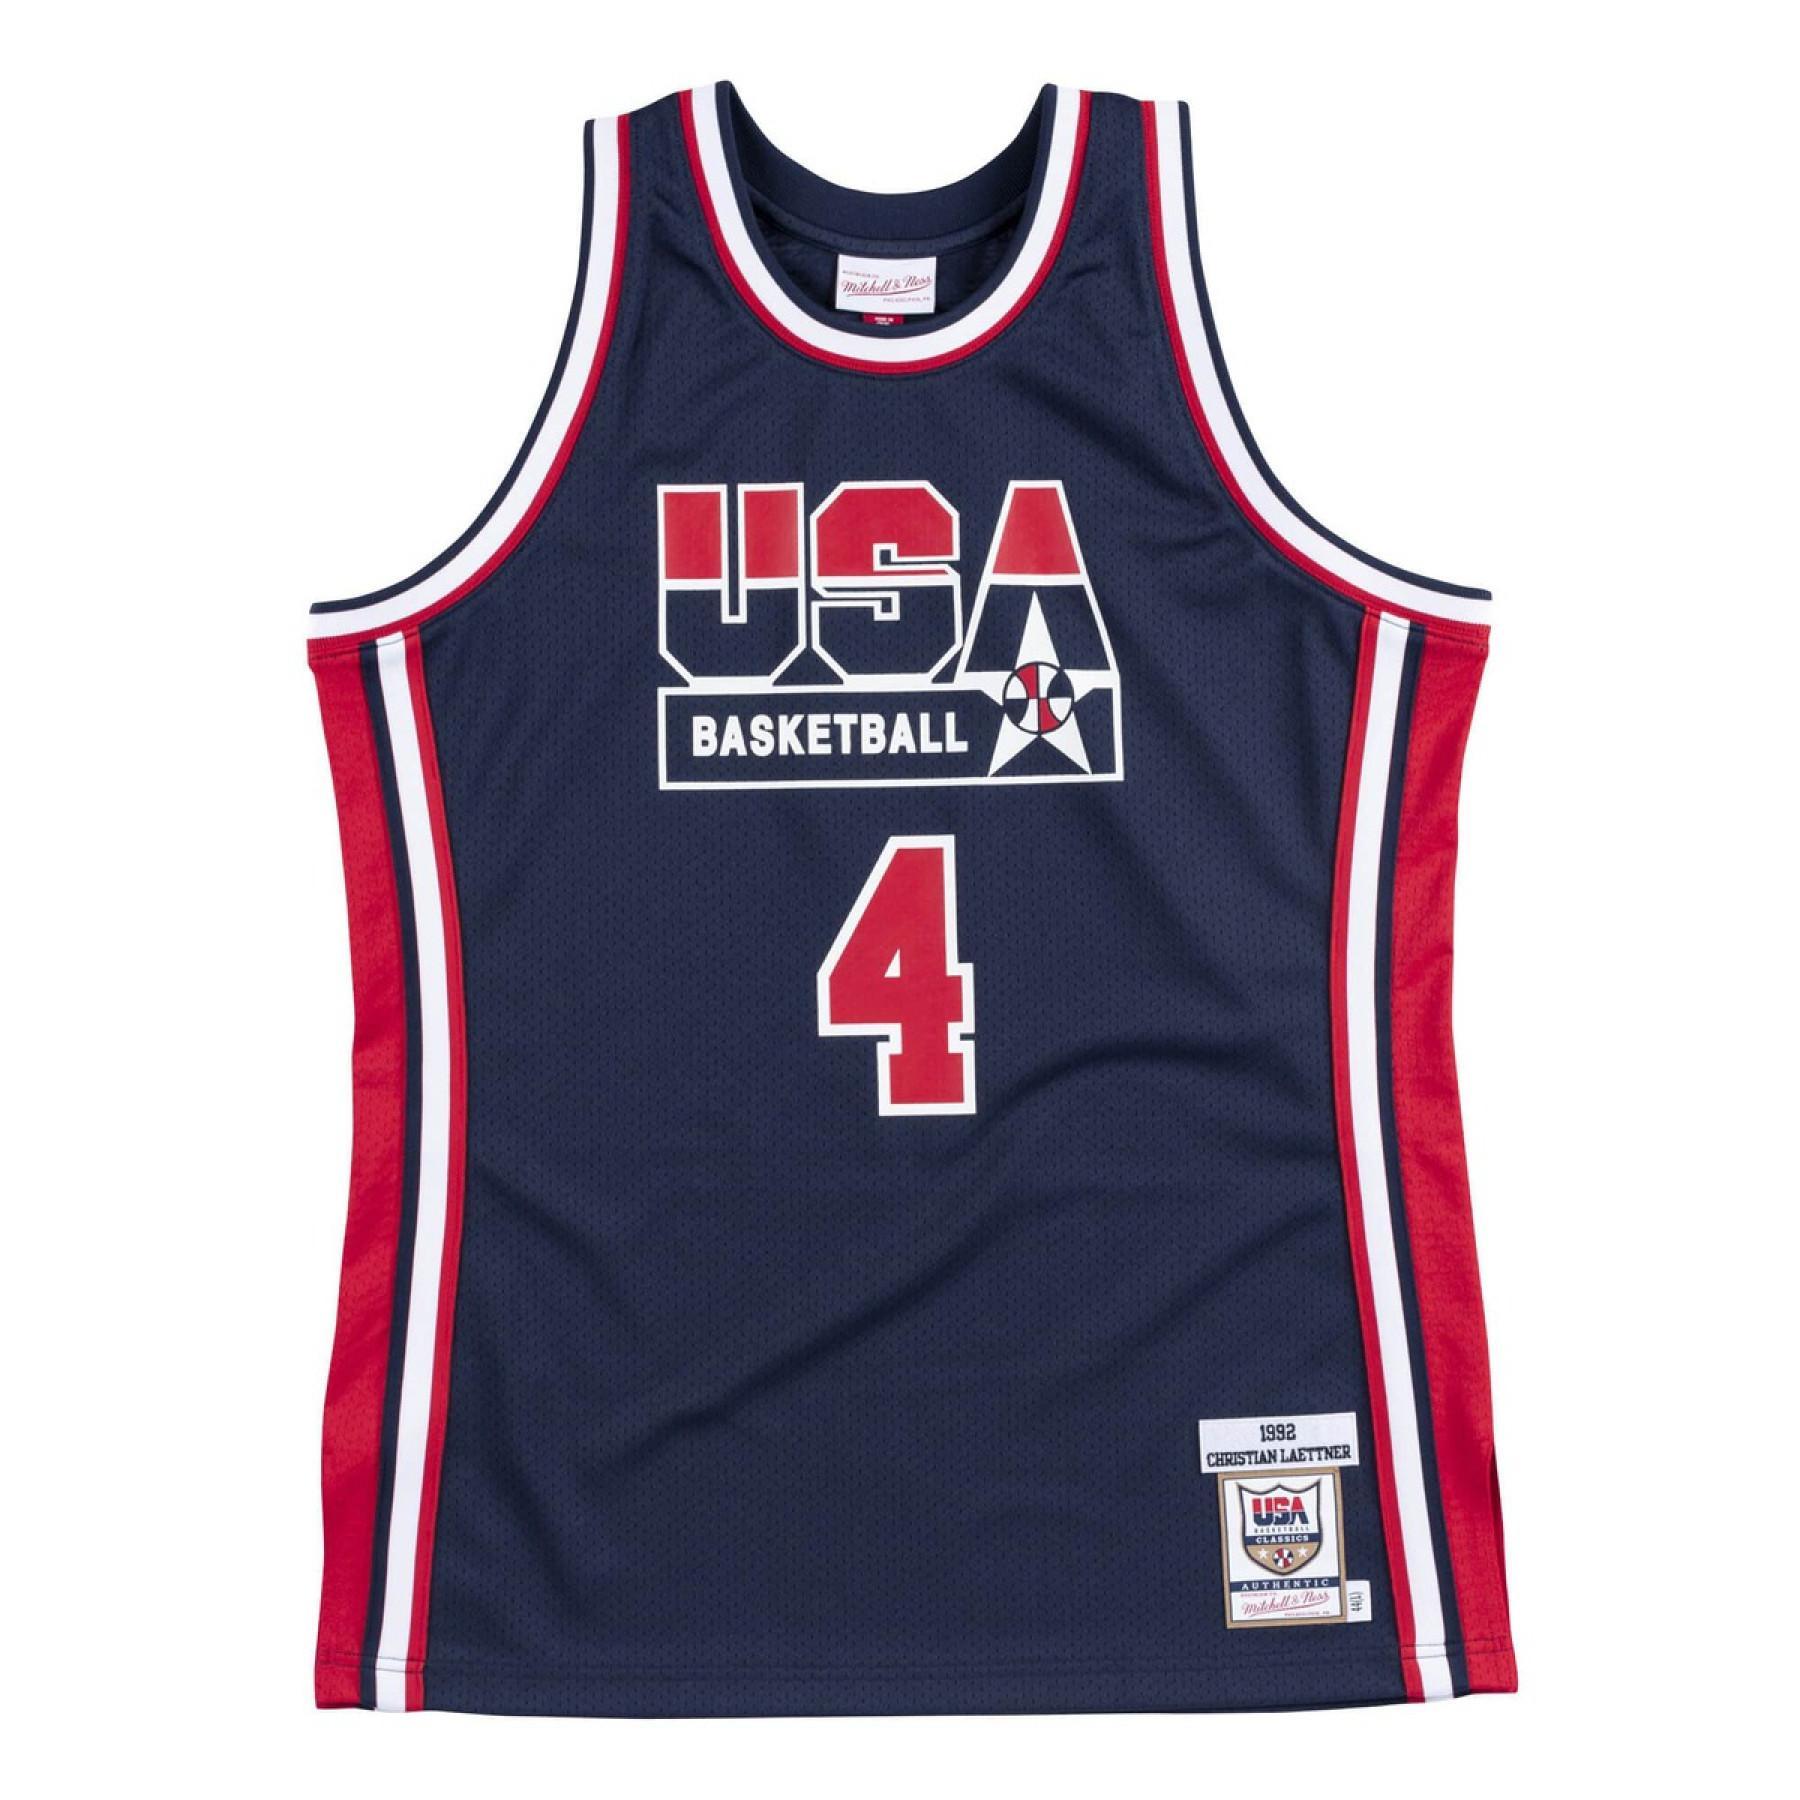 Autentyczna koszulka drużyny USA nba Christian Laettner